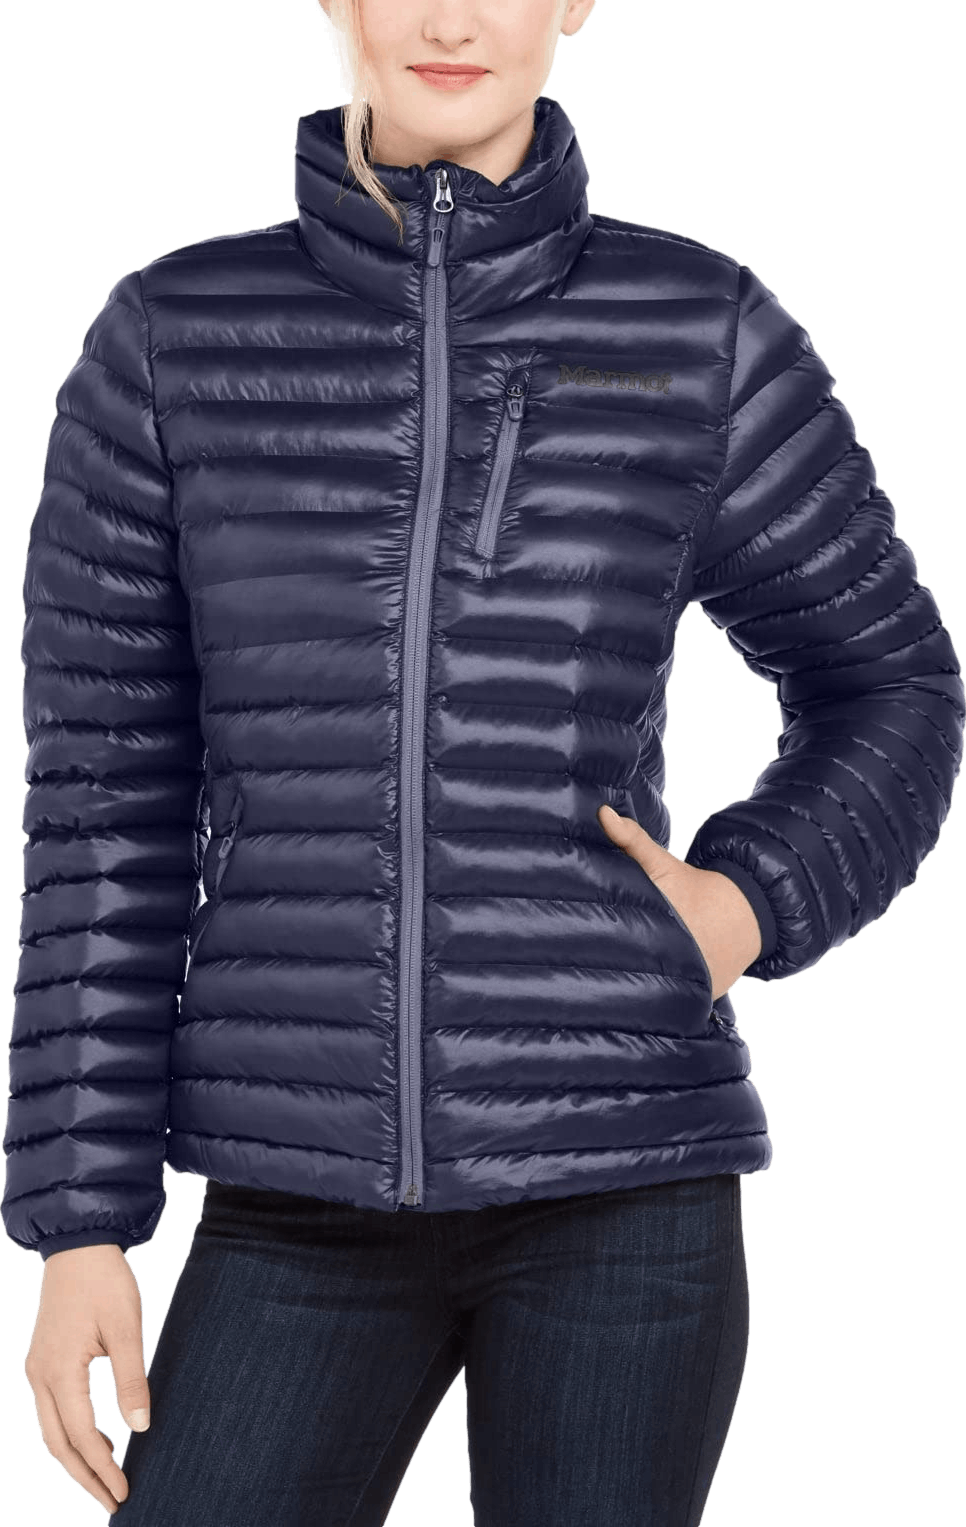 Marmot Women's Avant Featherless Insulated Jacket